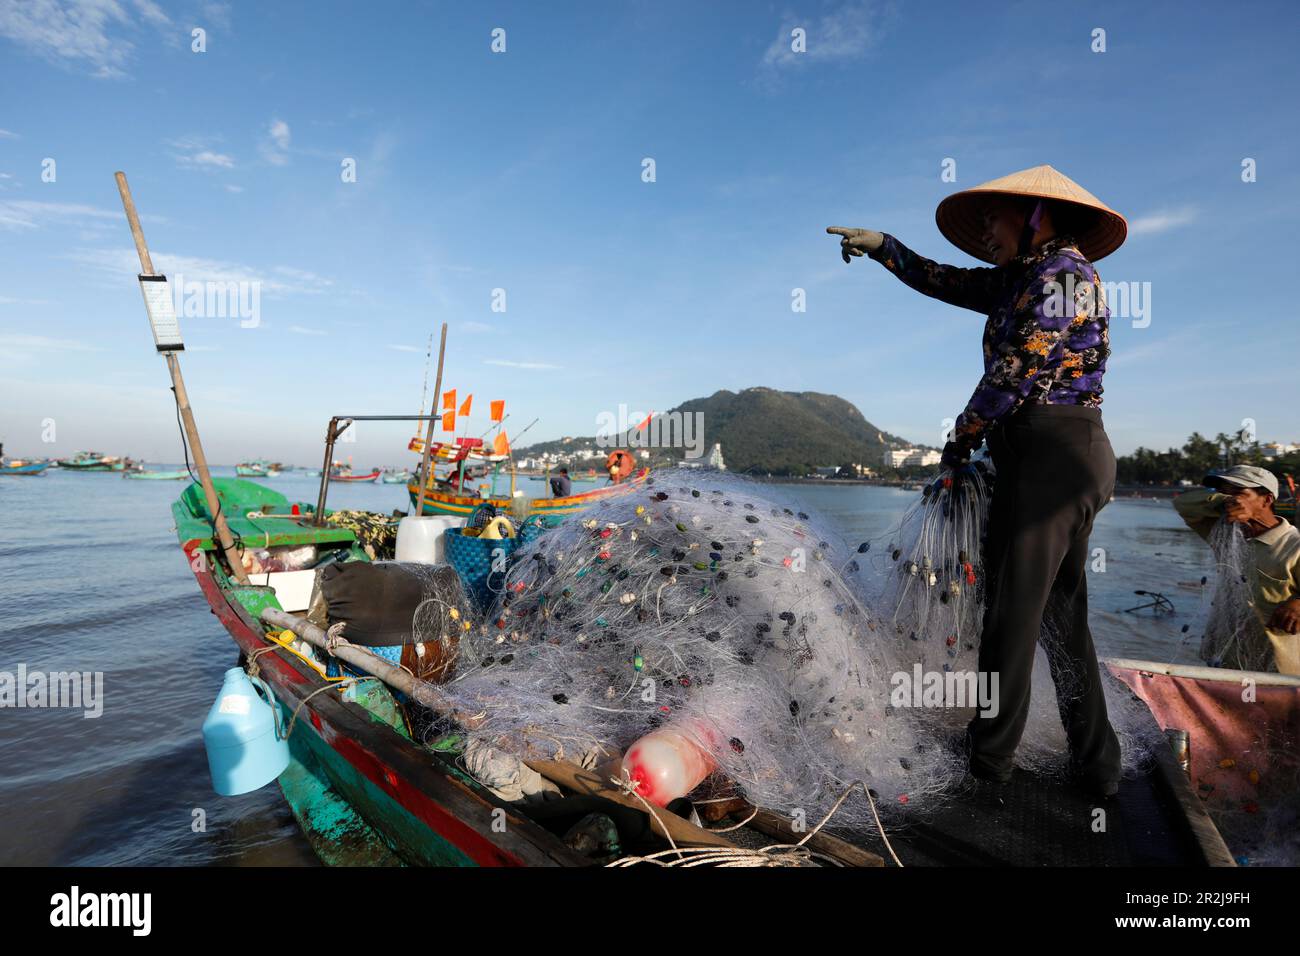 Frau mit dem traditionellen vietnamesischen konischen Hut, die Fischernetze repariert, Hang Dua Bay, Vung Tau, Vietnam, Indochina, Südostasien, Asien Stockfoto